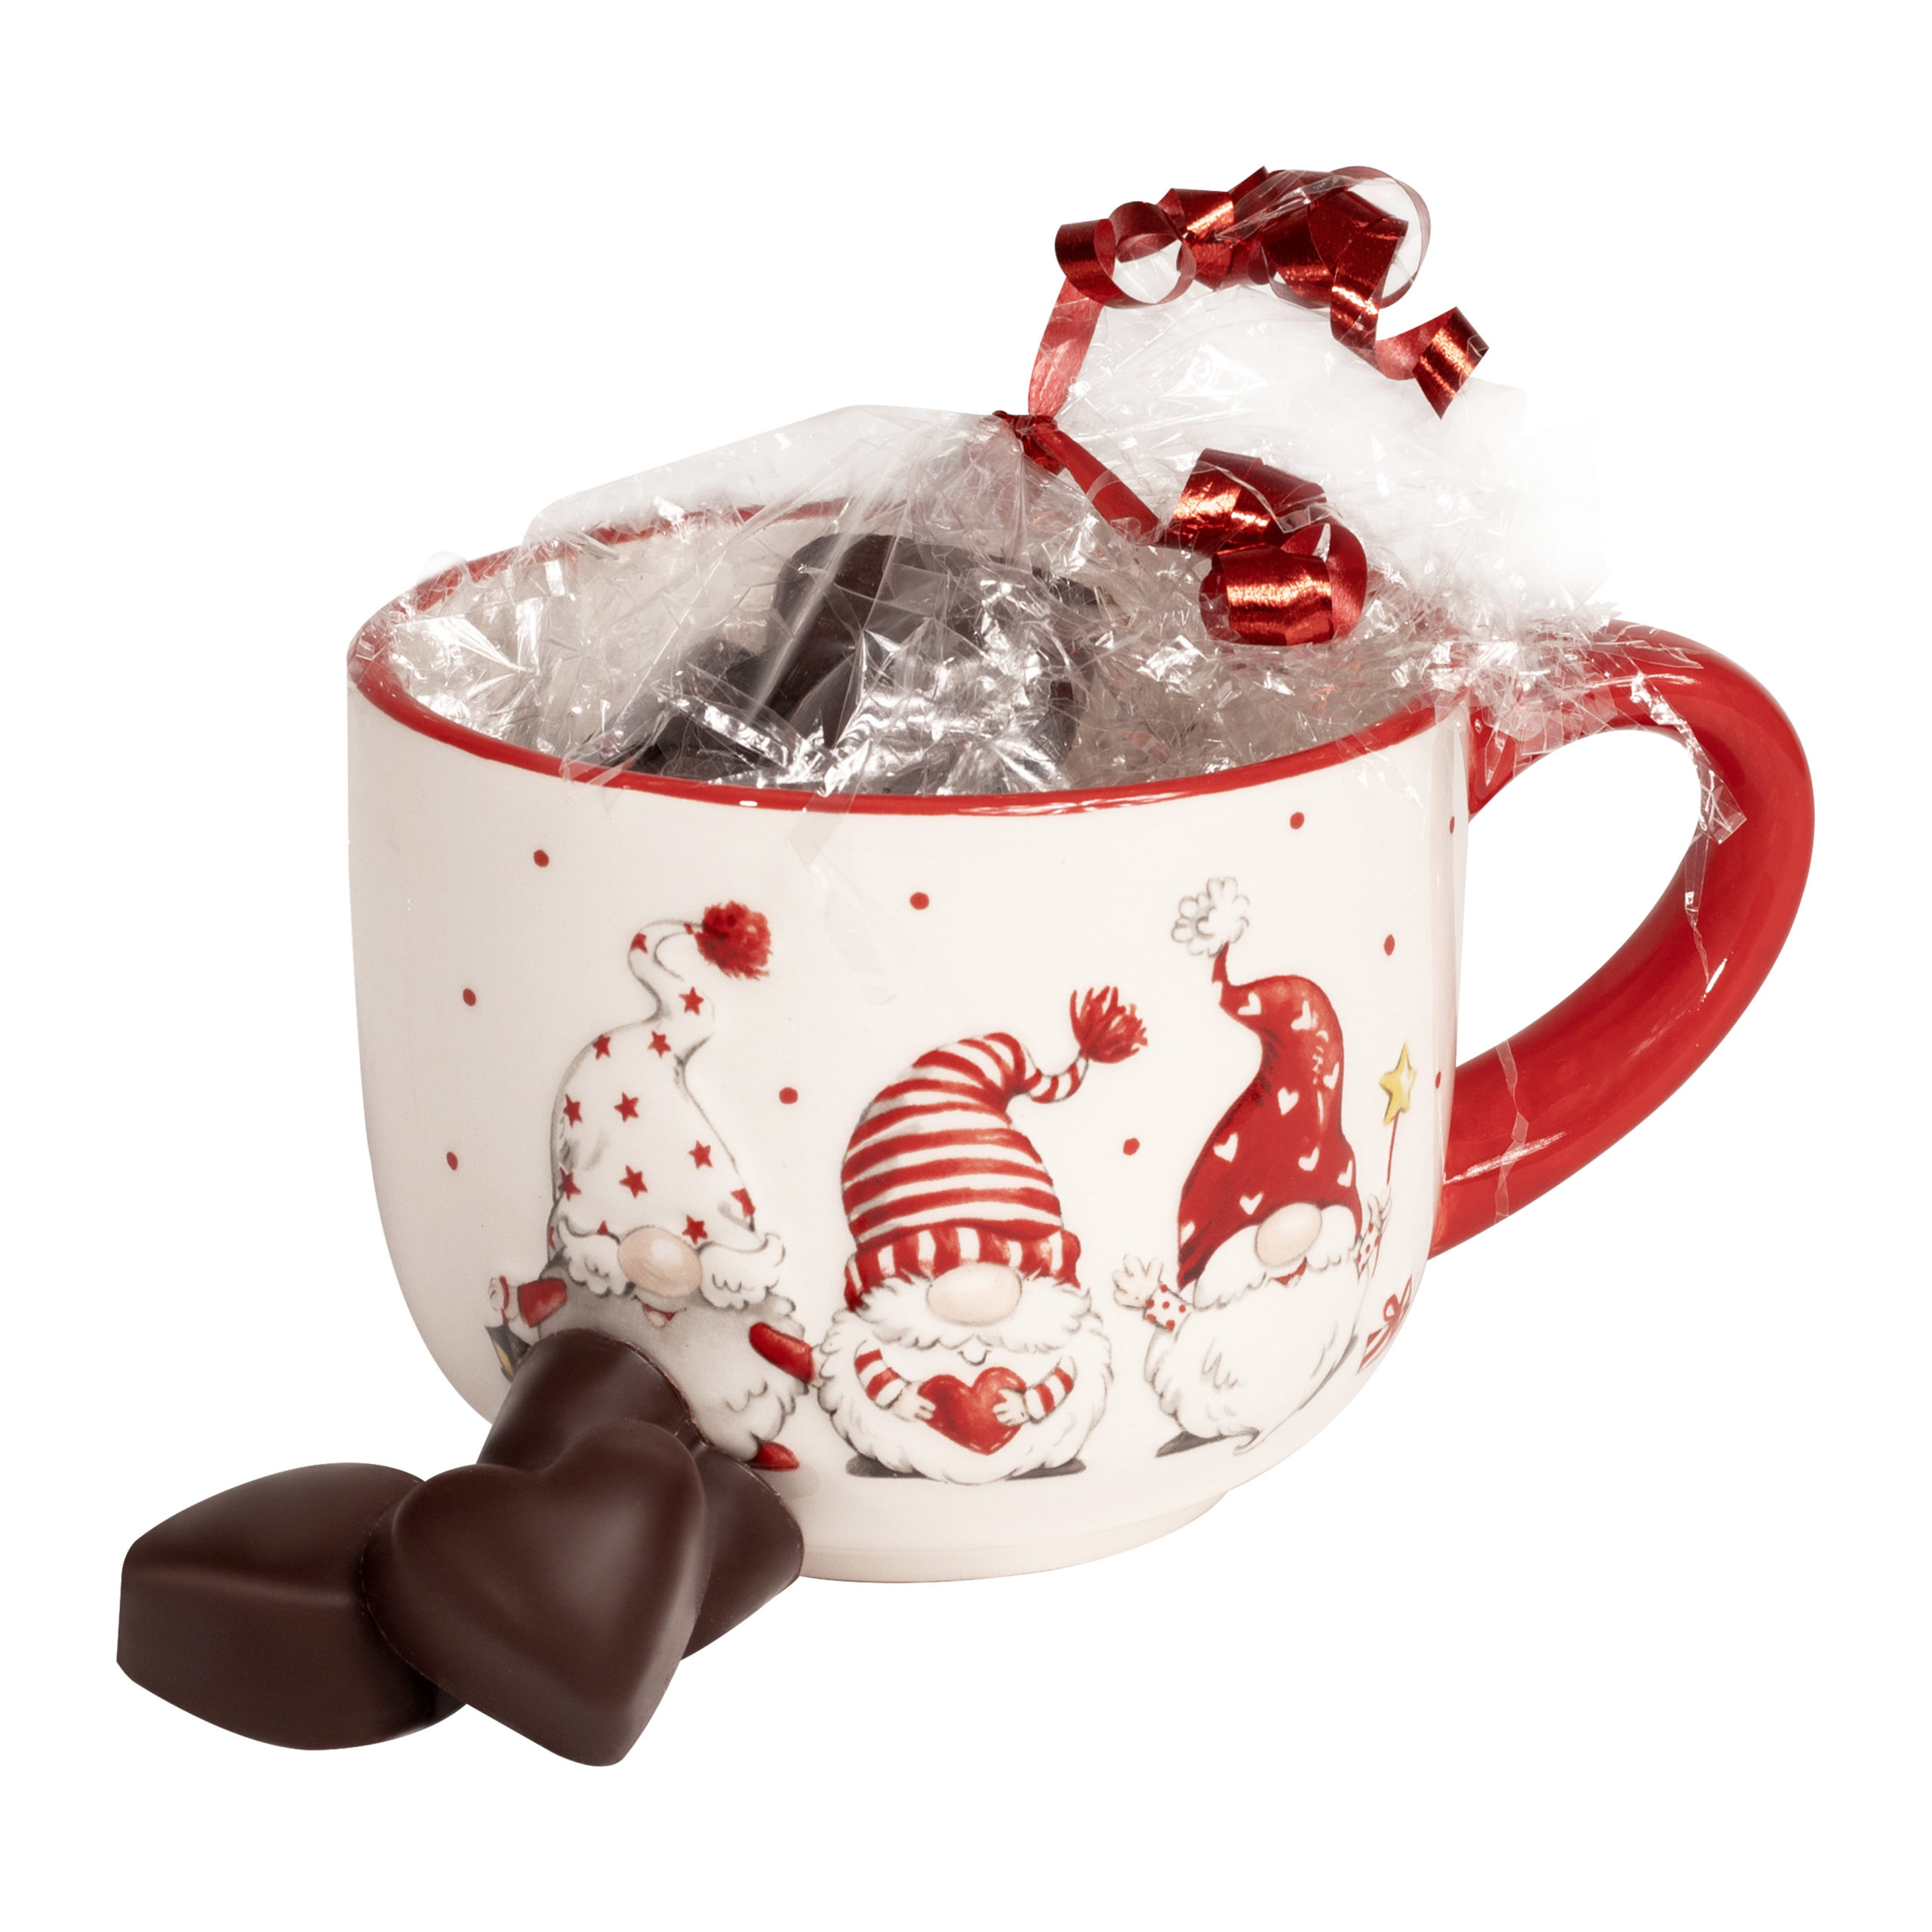 Cioccolatini e tazza natalizia